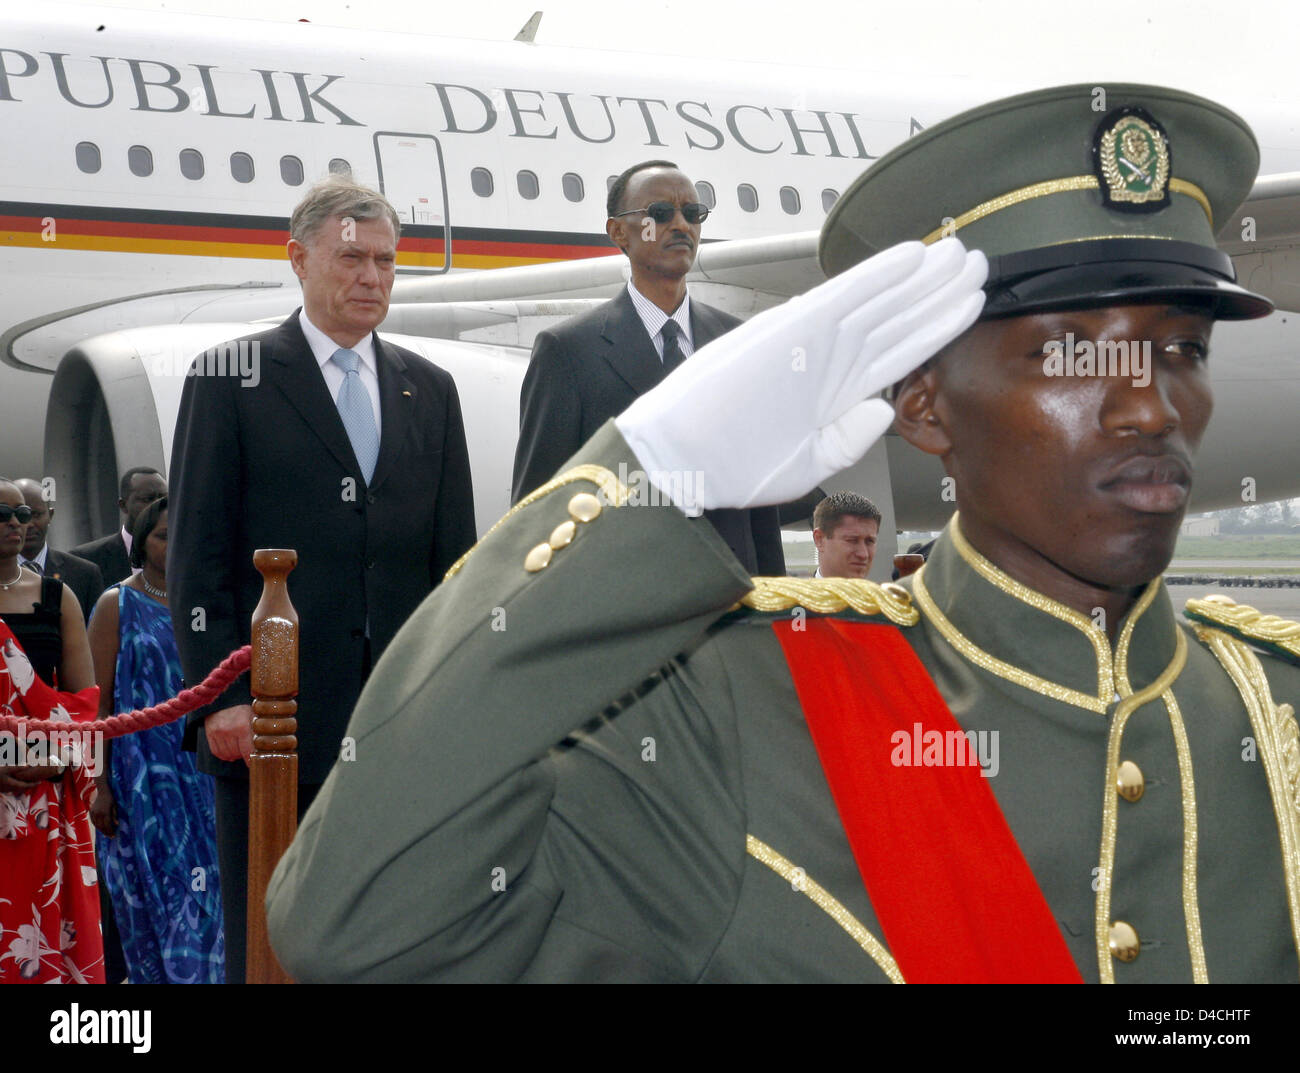 Der Präsident von Ruanda, Paul Kagame begrüßt der deutsche Präsident Horst Köhler (L) am Flughafen in Kigali, Ruanda, 6. Februar 2008. Köhler und seine Frau bezahlen einen dreitägigen Besuch in Ruanda. Foto: WOLFGANG KUMM Stockfoto